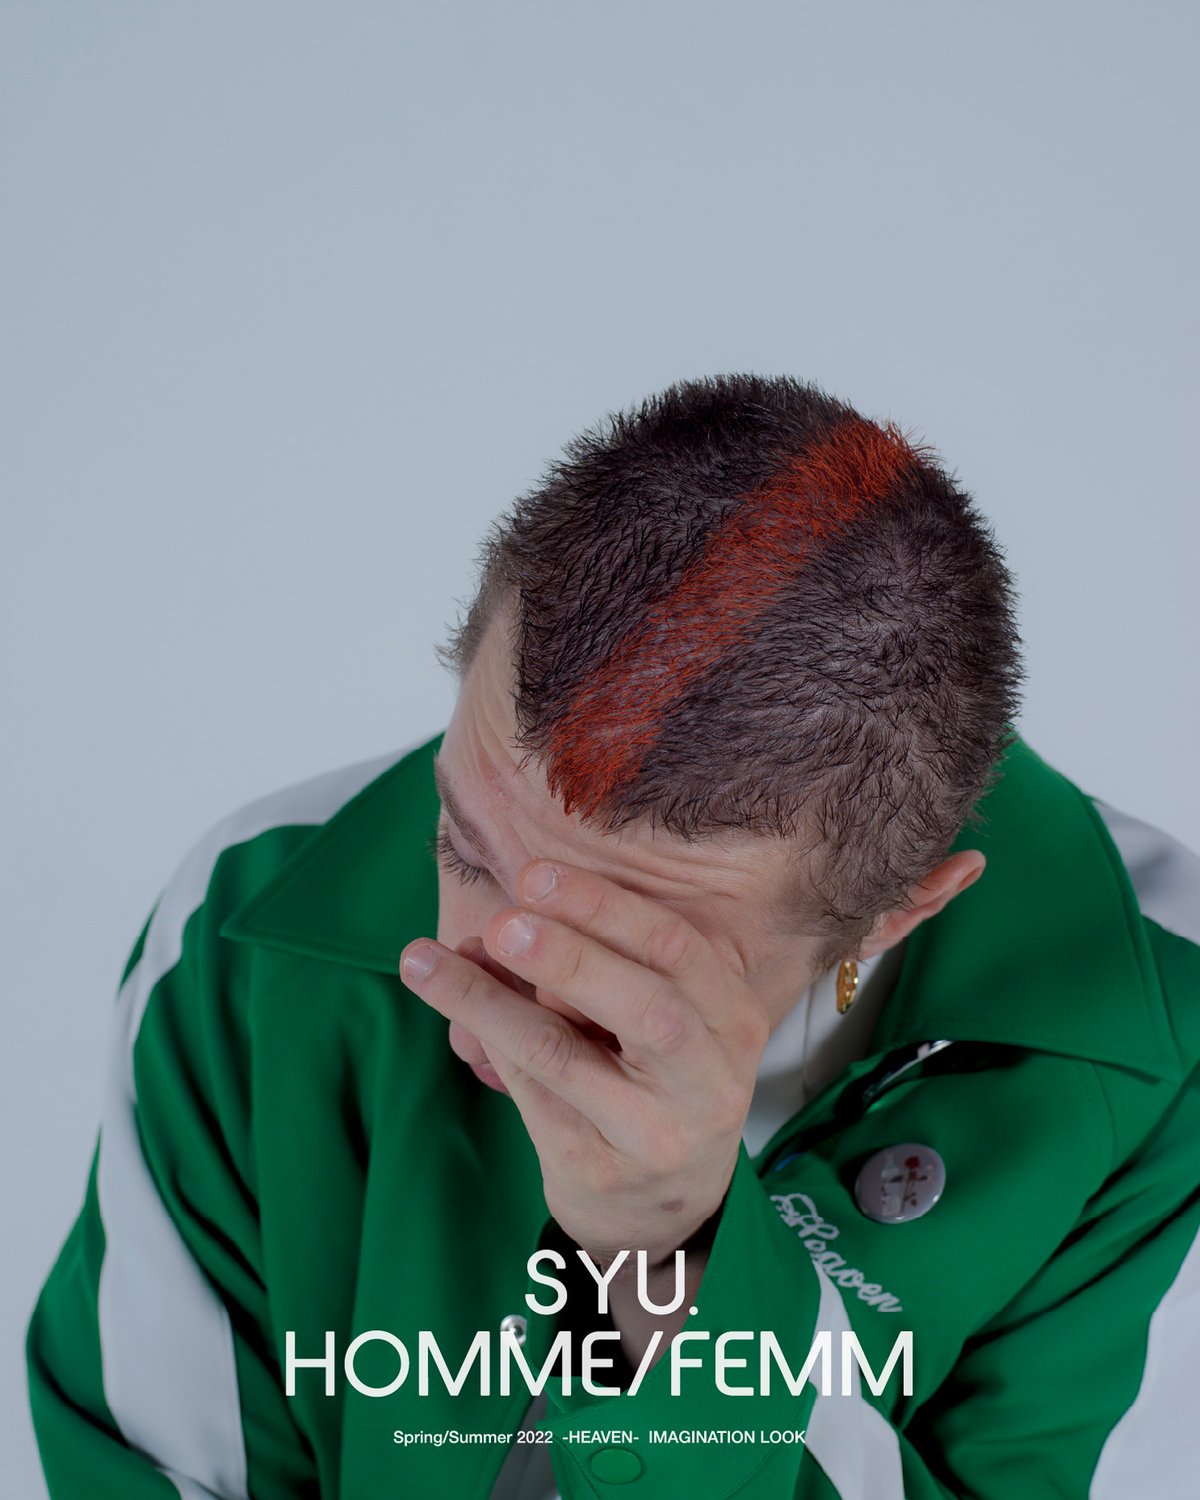 SYU.HOMME/FEMM 2022年春夏コレクション | 画像33枚 - FASHIONSNAP